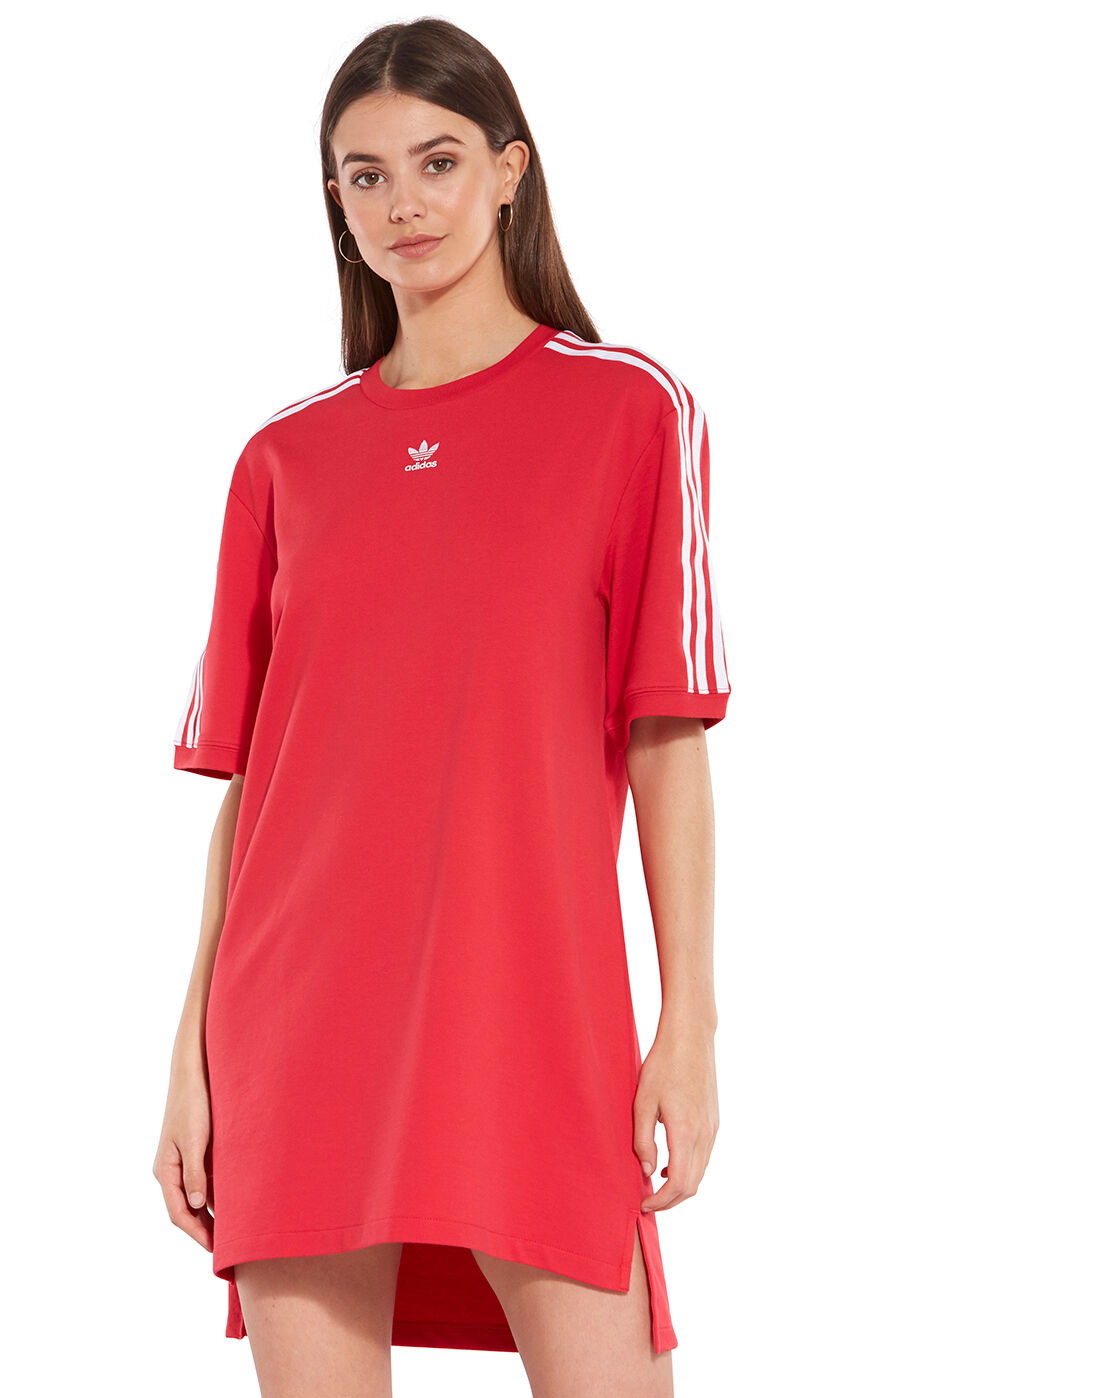 adidas t shirt dress red